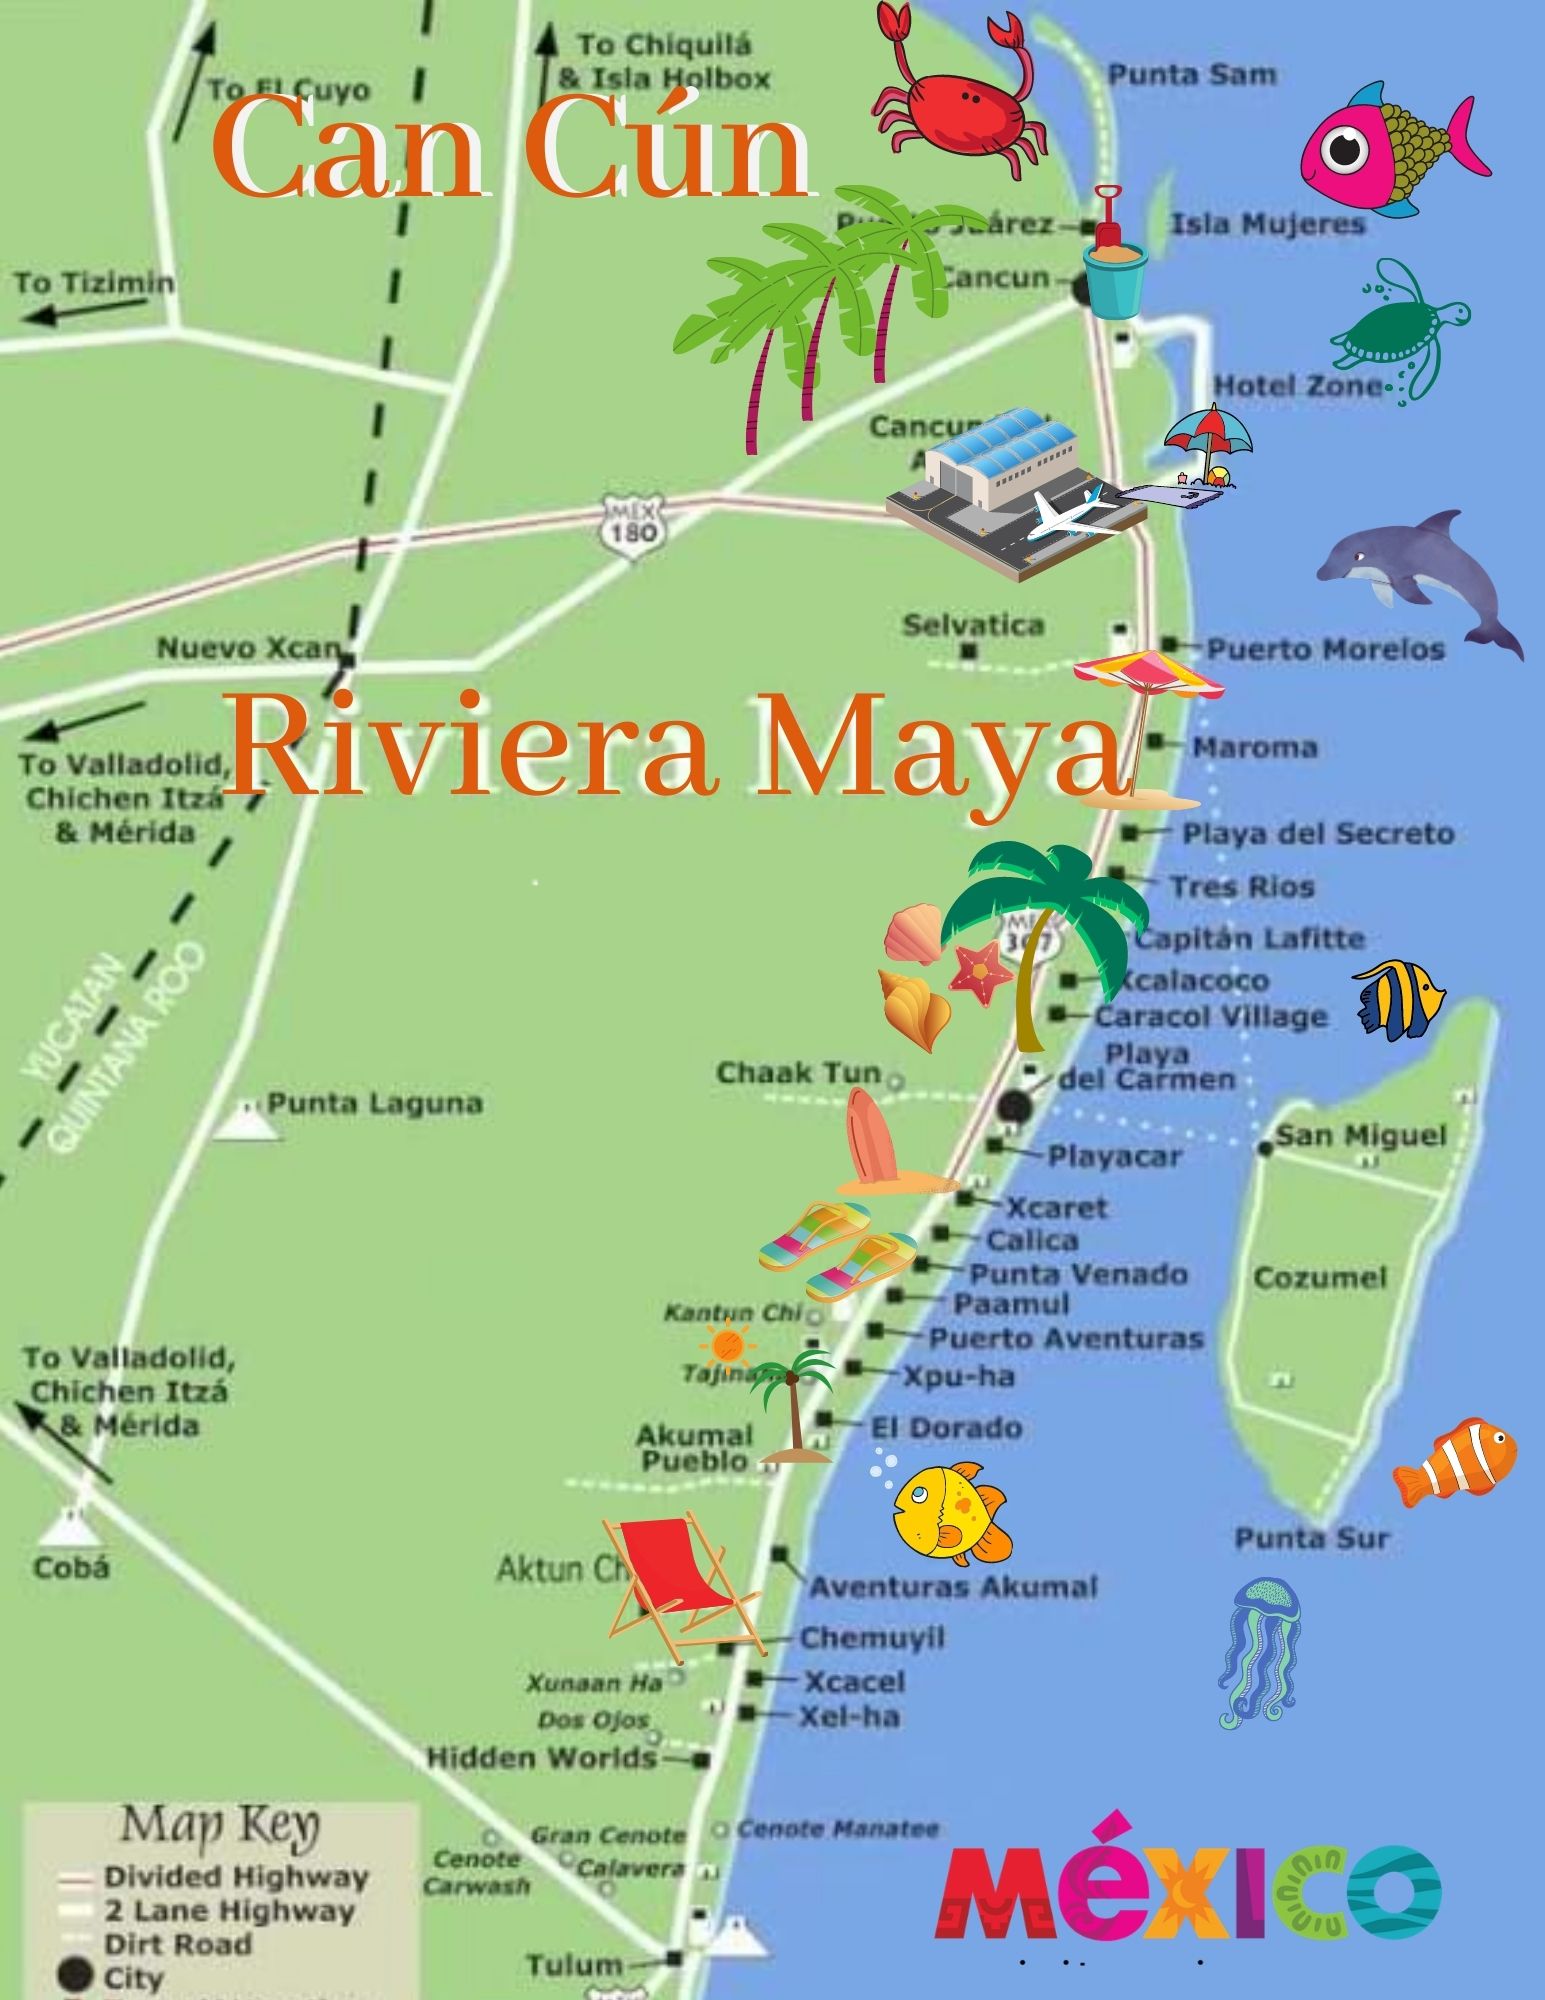 Riviera Maya Map 1 